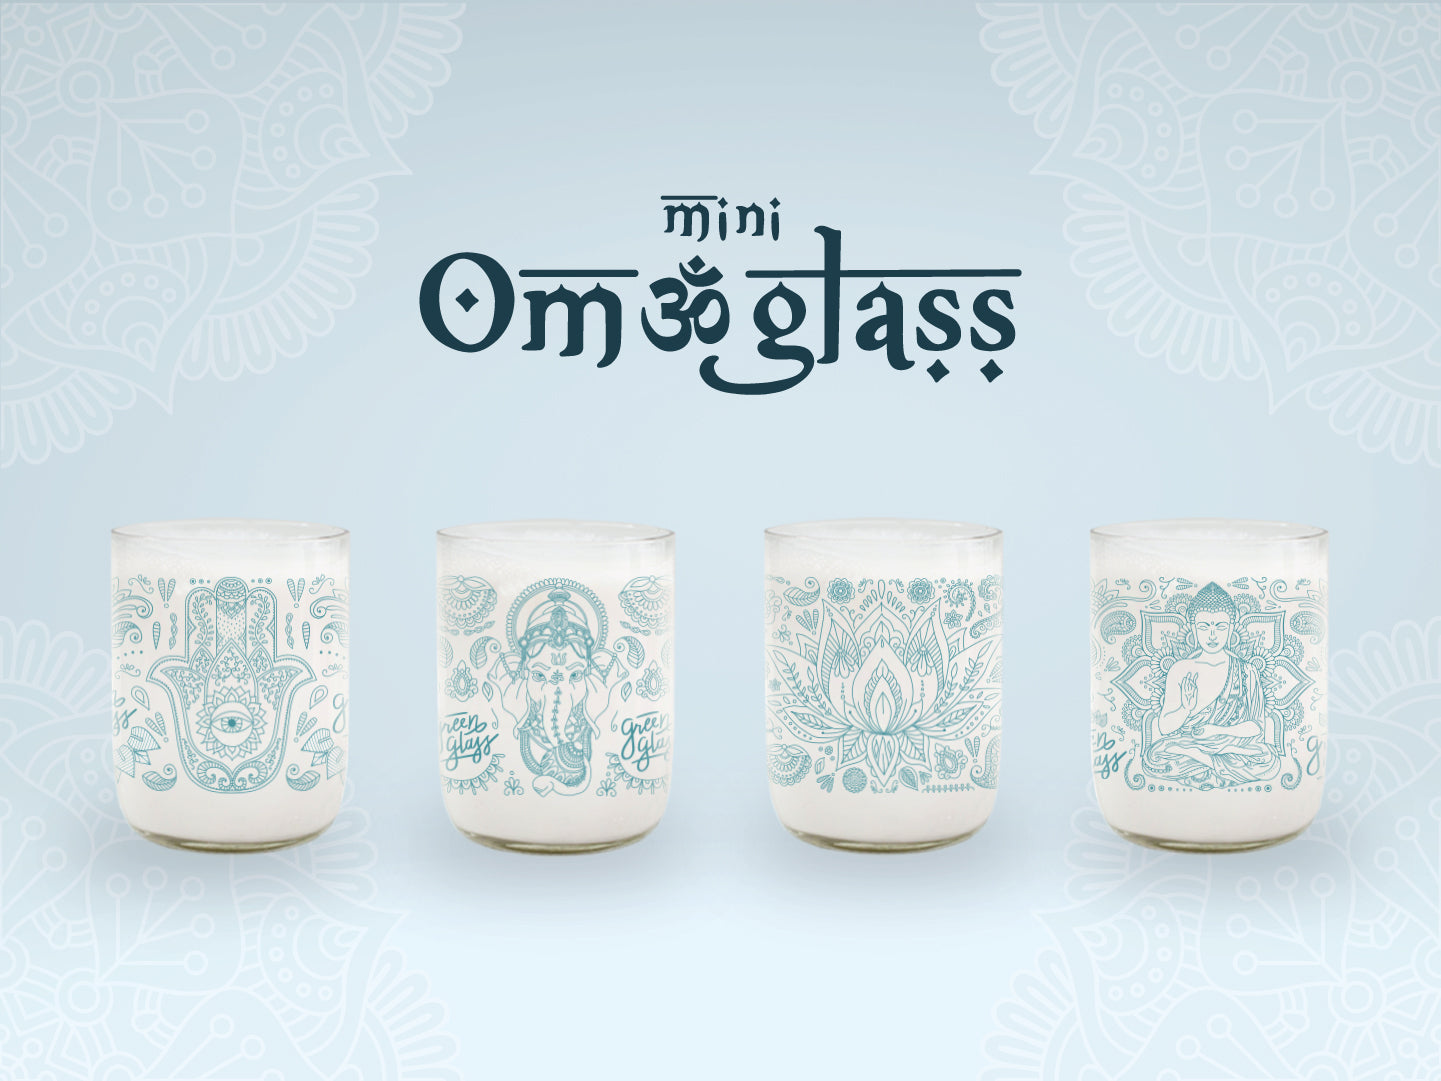 Mini Om Glass Juego de 4 Vasos